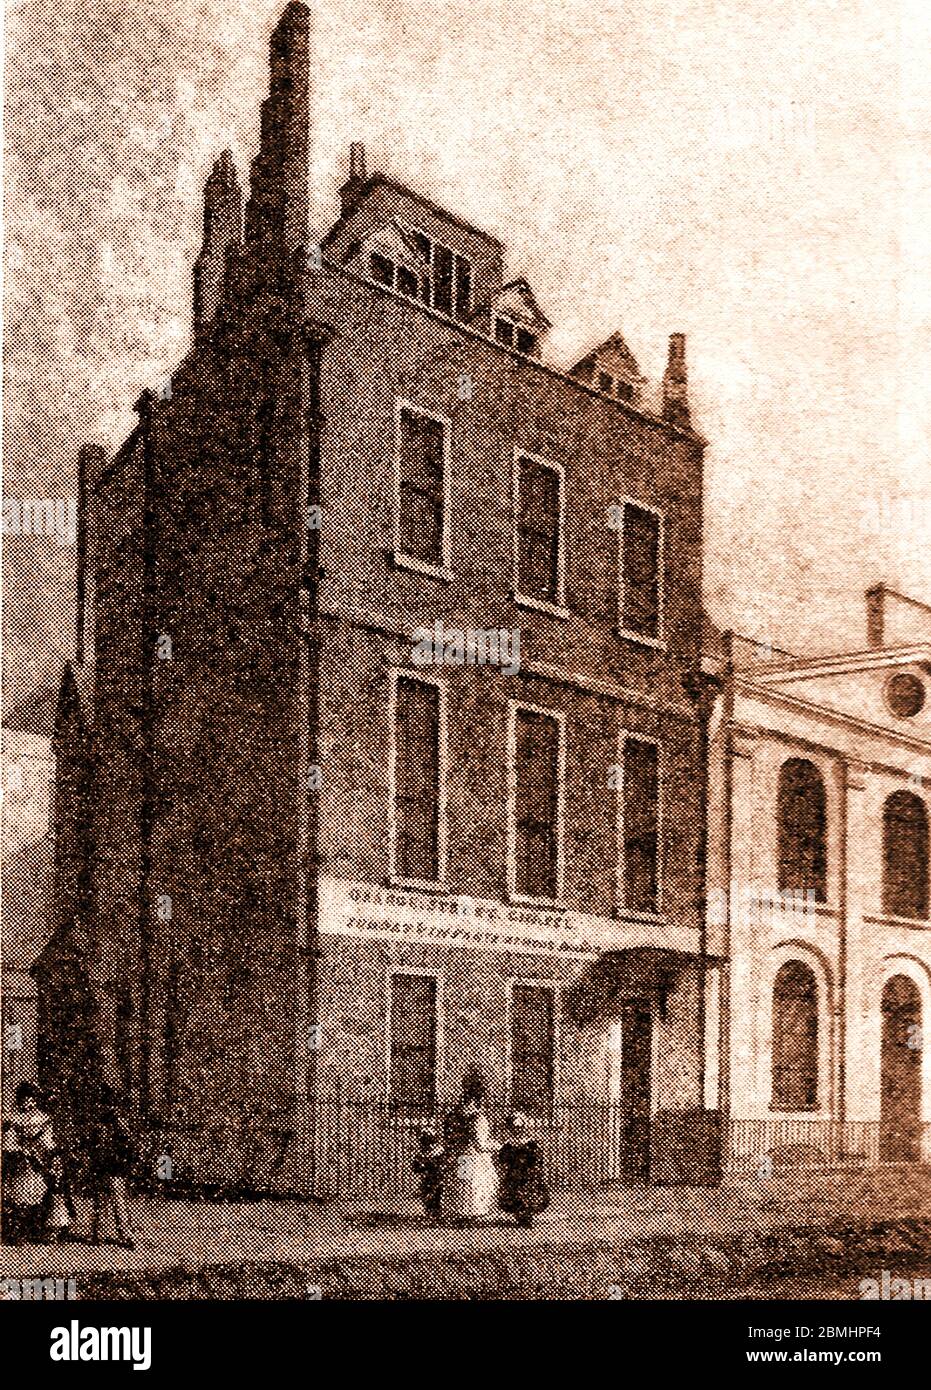 La maison de St Martin Street, Londres, Angleterre (aujourd'hui démolie) où Sir Isaac Newton (1642-1727) vivait autrefois.qui semble avoir été typique de la rue, se composait de trois étages et sous-sol avec un toit en tuiles. Le site est maintenant occupé par la bibliothèque de référence publique de Westminster. La porte d'entrée avait projeté la hotte soutenue sur des supports sculptés. Sir Isaac Newton, a occupé la maison de 1711 à 1727, l'année de sa mort. Il était encore assez actif pour utiliser un petit observatoire qu'il avait construit au sommet de la maison. Banque D'Images